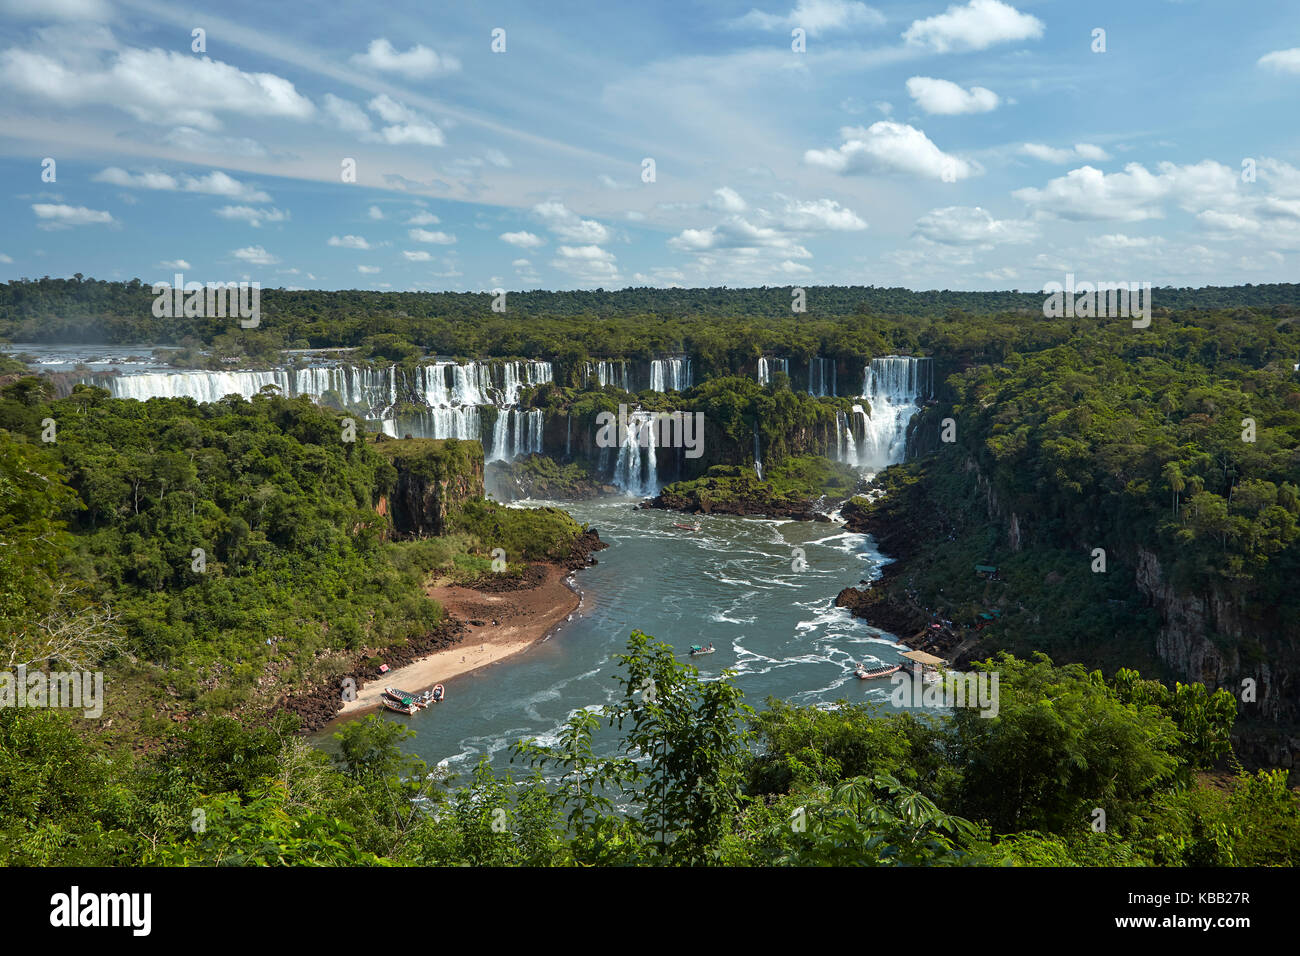 Cascate di Iguazu sul lato argentino, e barche turistiche sul fiume Iguazu, Brasile - confine con l'Argentina, Sud America Foto Stock